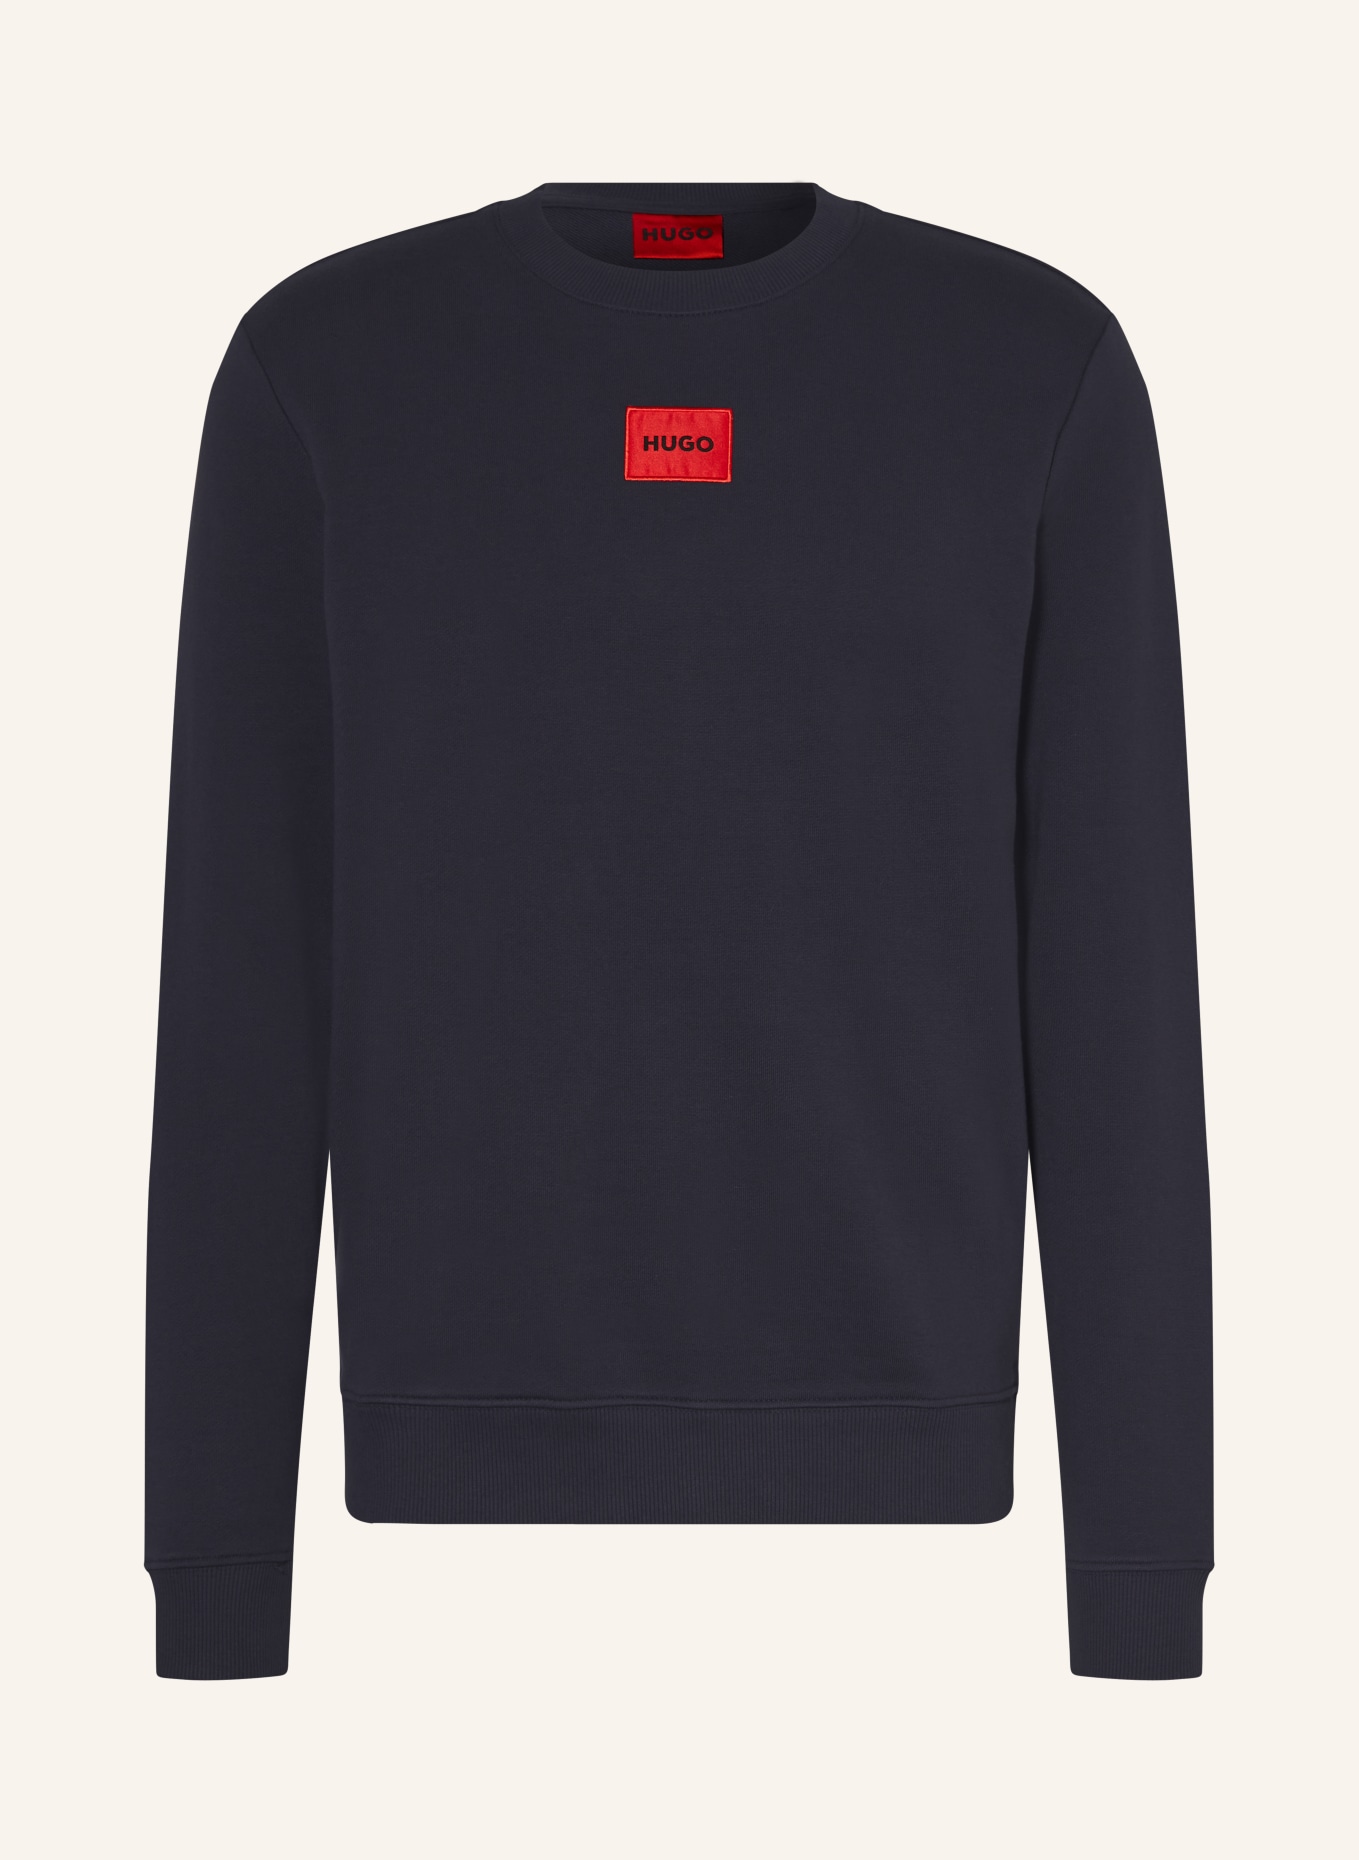 HUGO Sweatshirt DIRAGOL, Farbe: DUNKELBLAU (Bild 1)